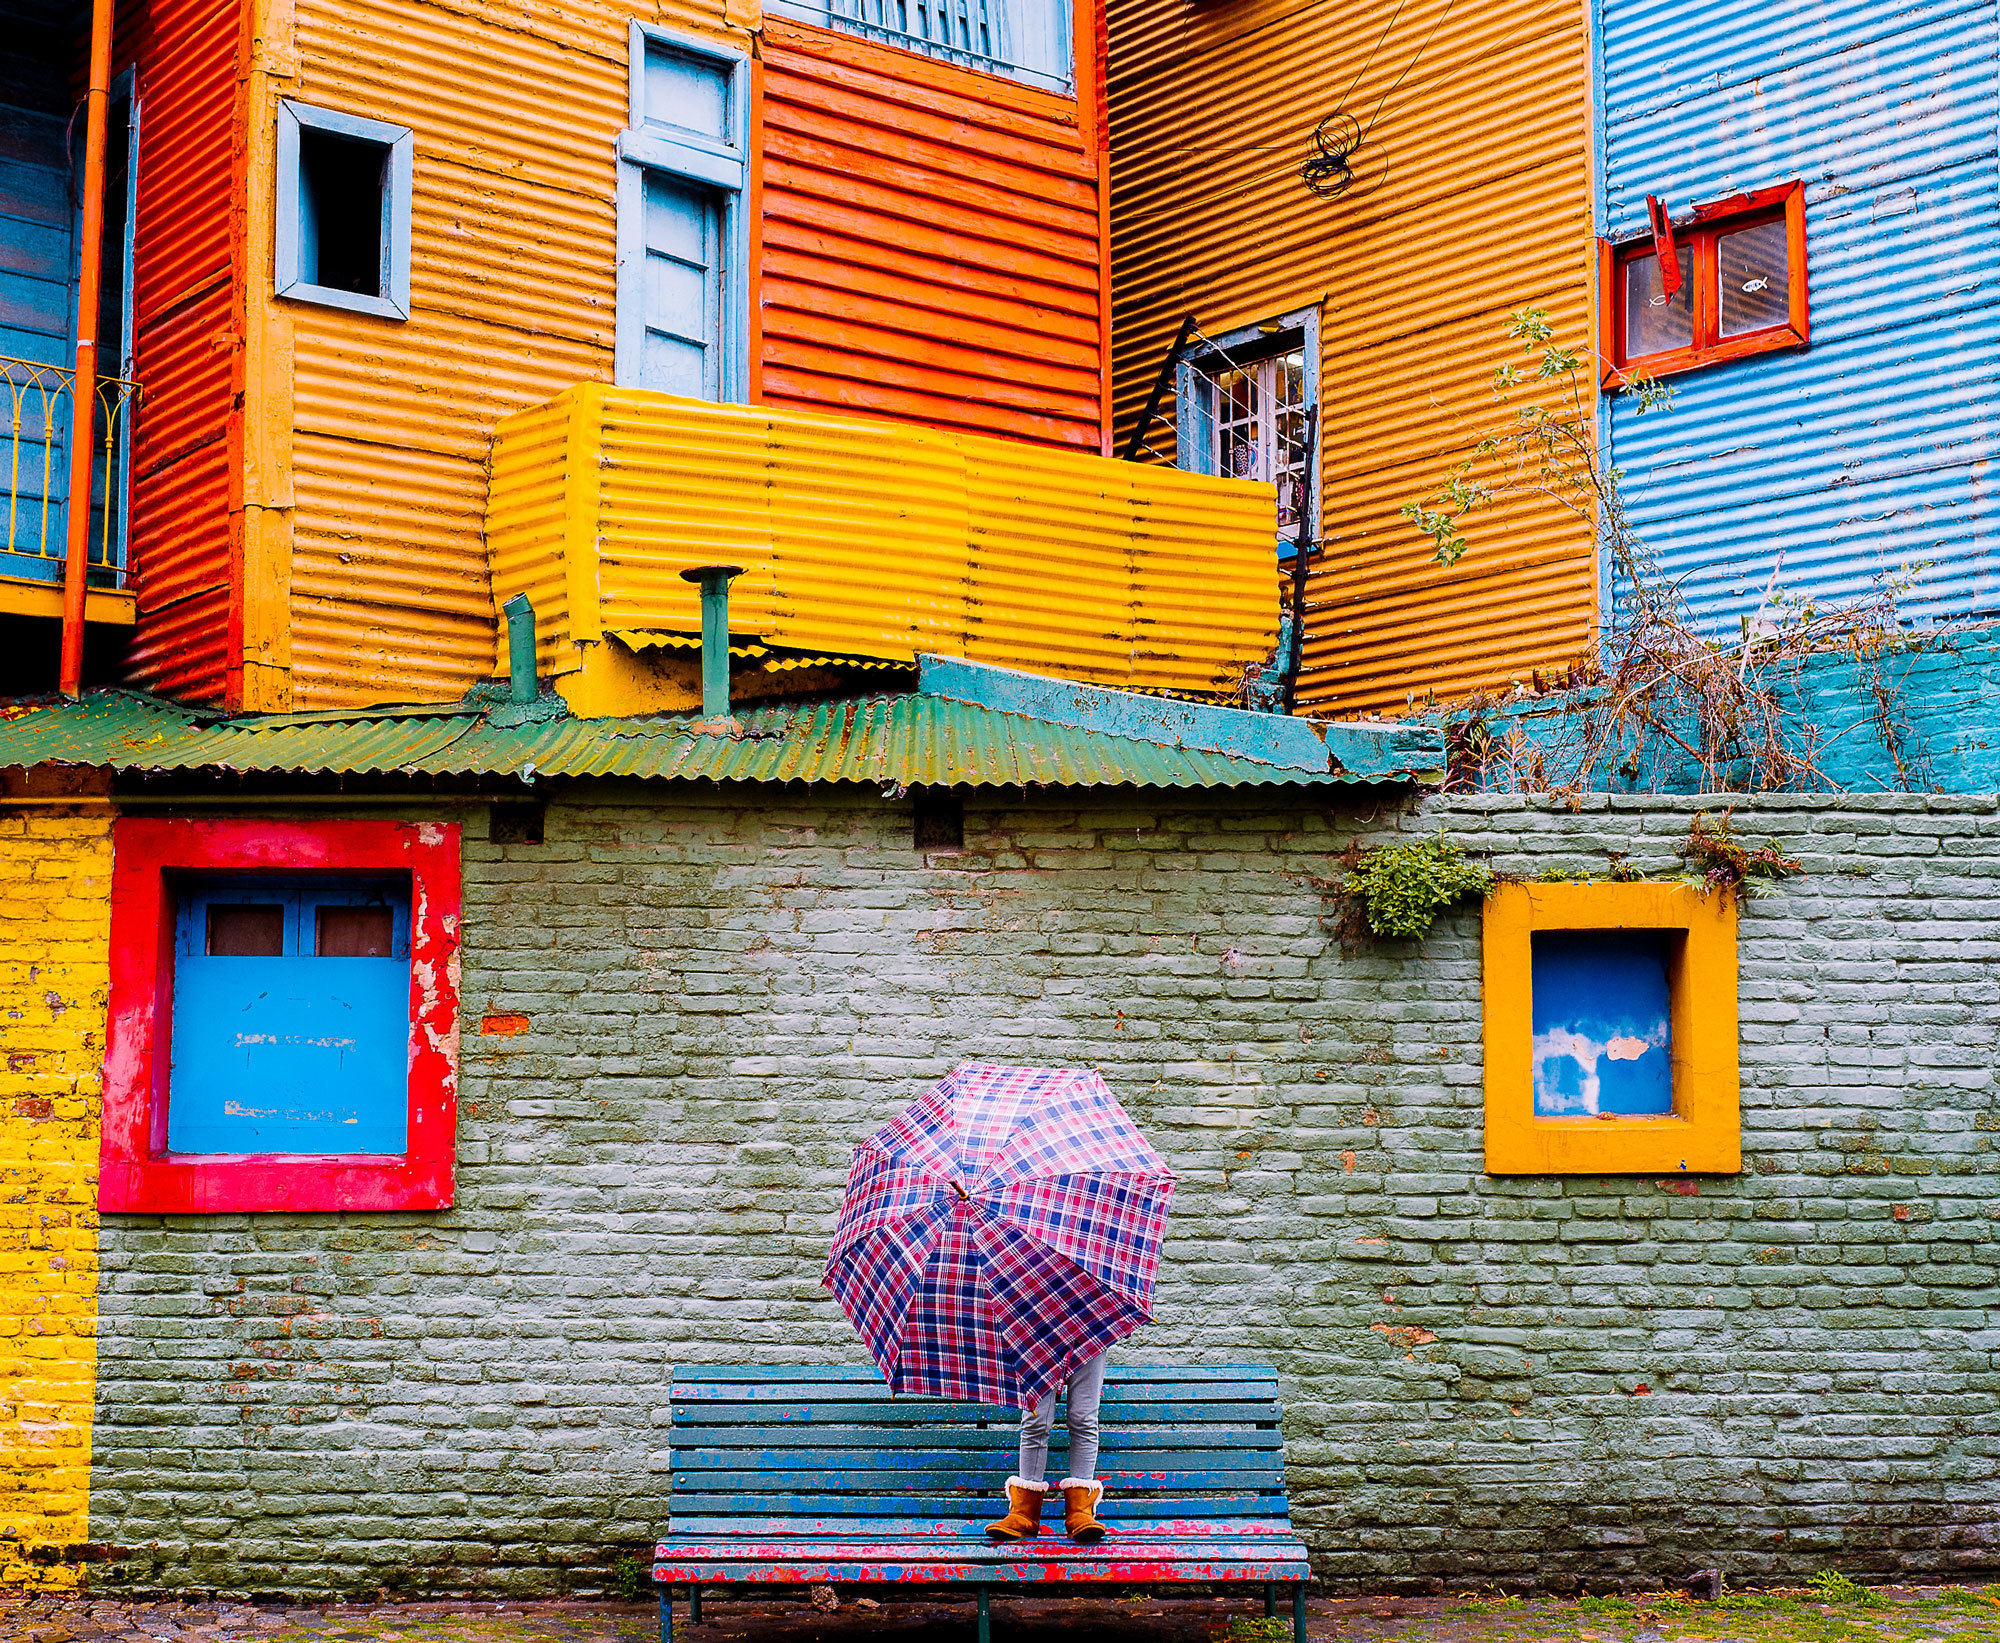 Fachadas multicolores del barrio de Caminito.